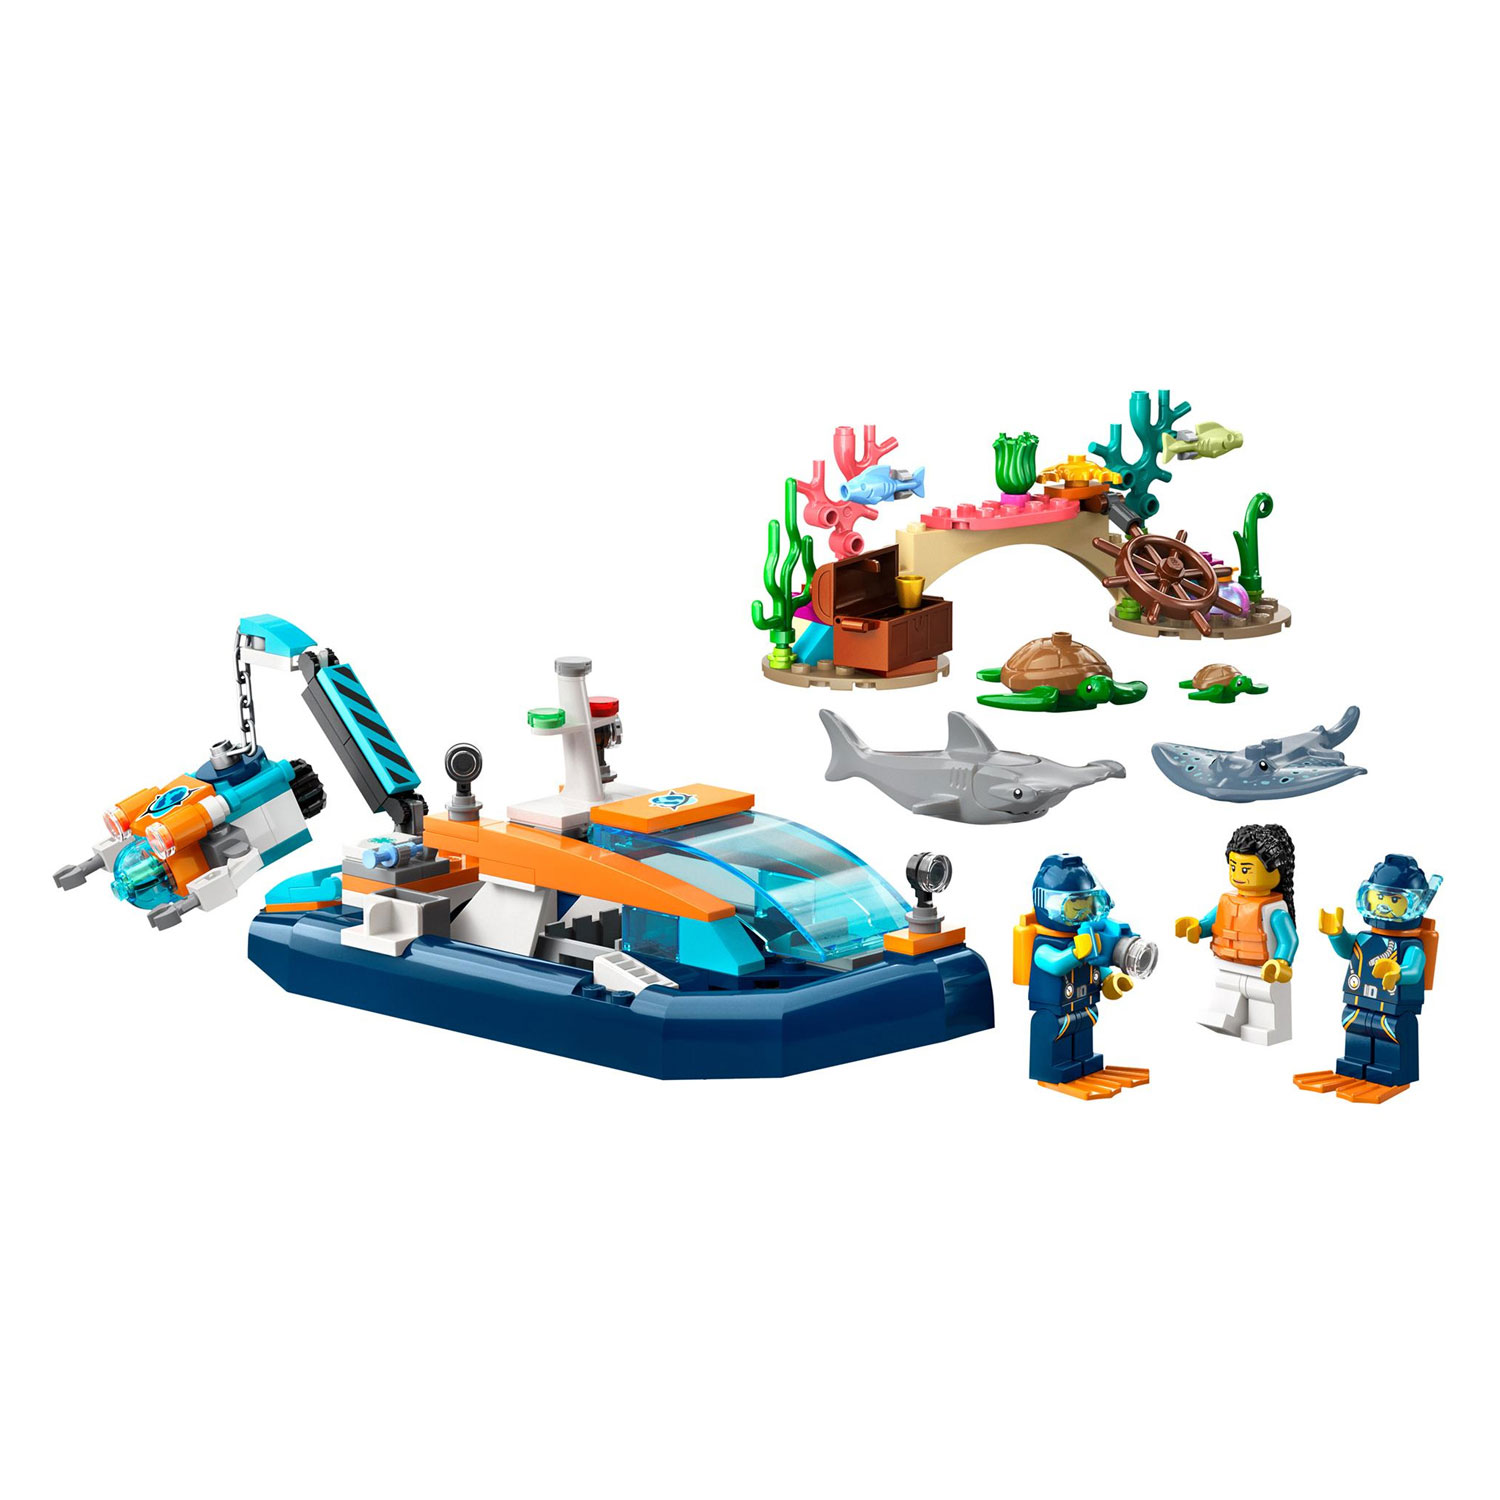 Le sous-marin de reconnaissance LEGO City 60377